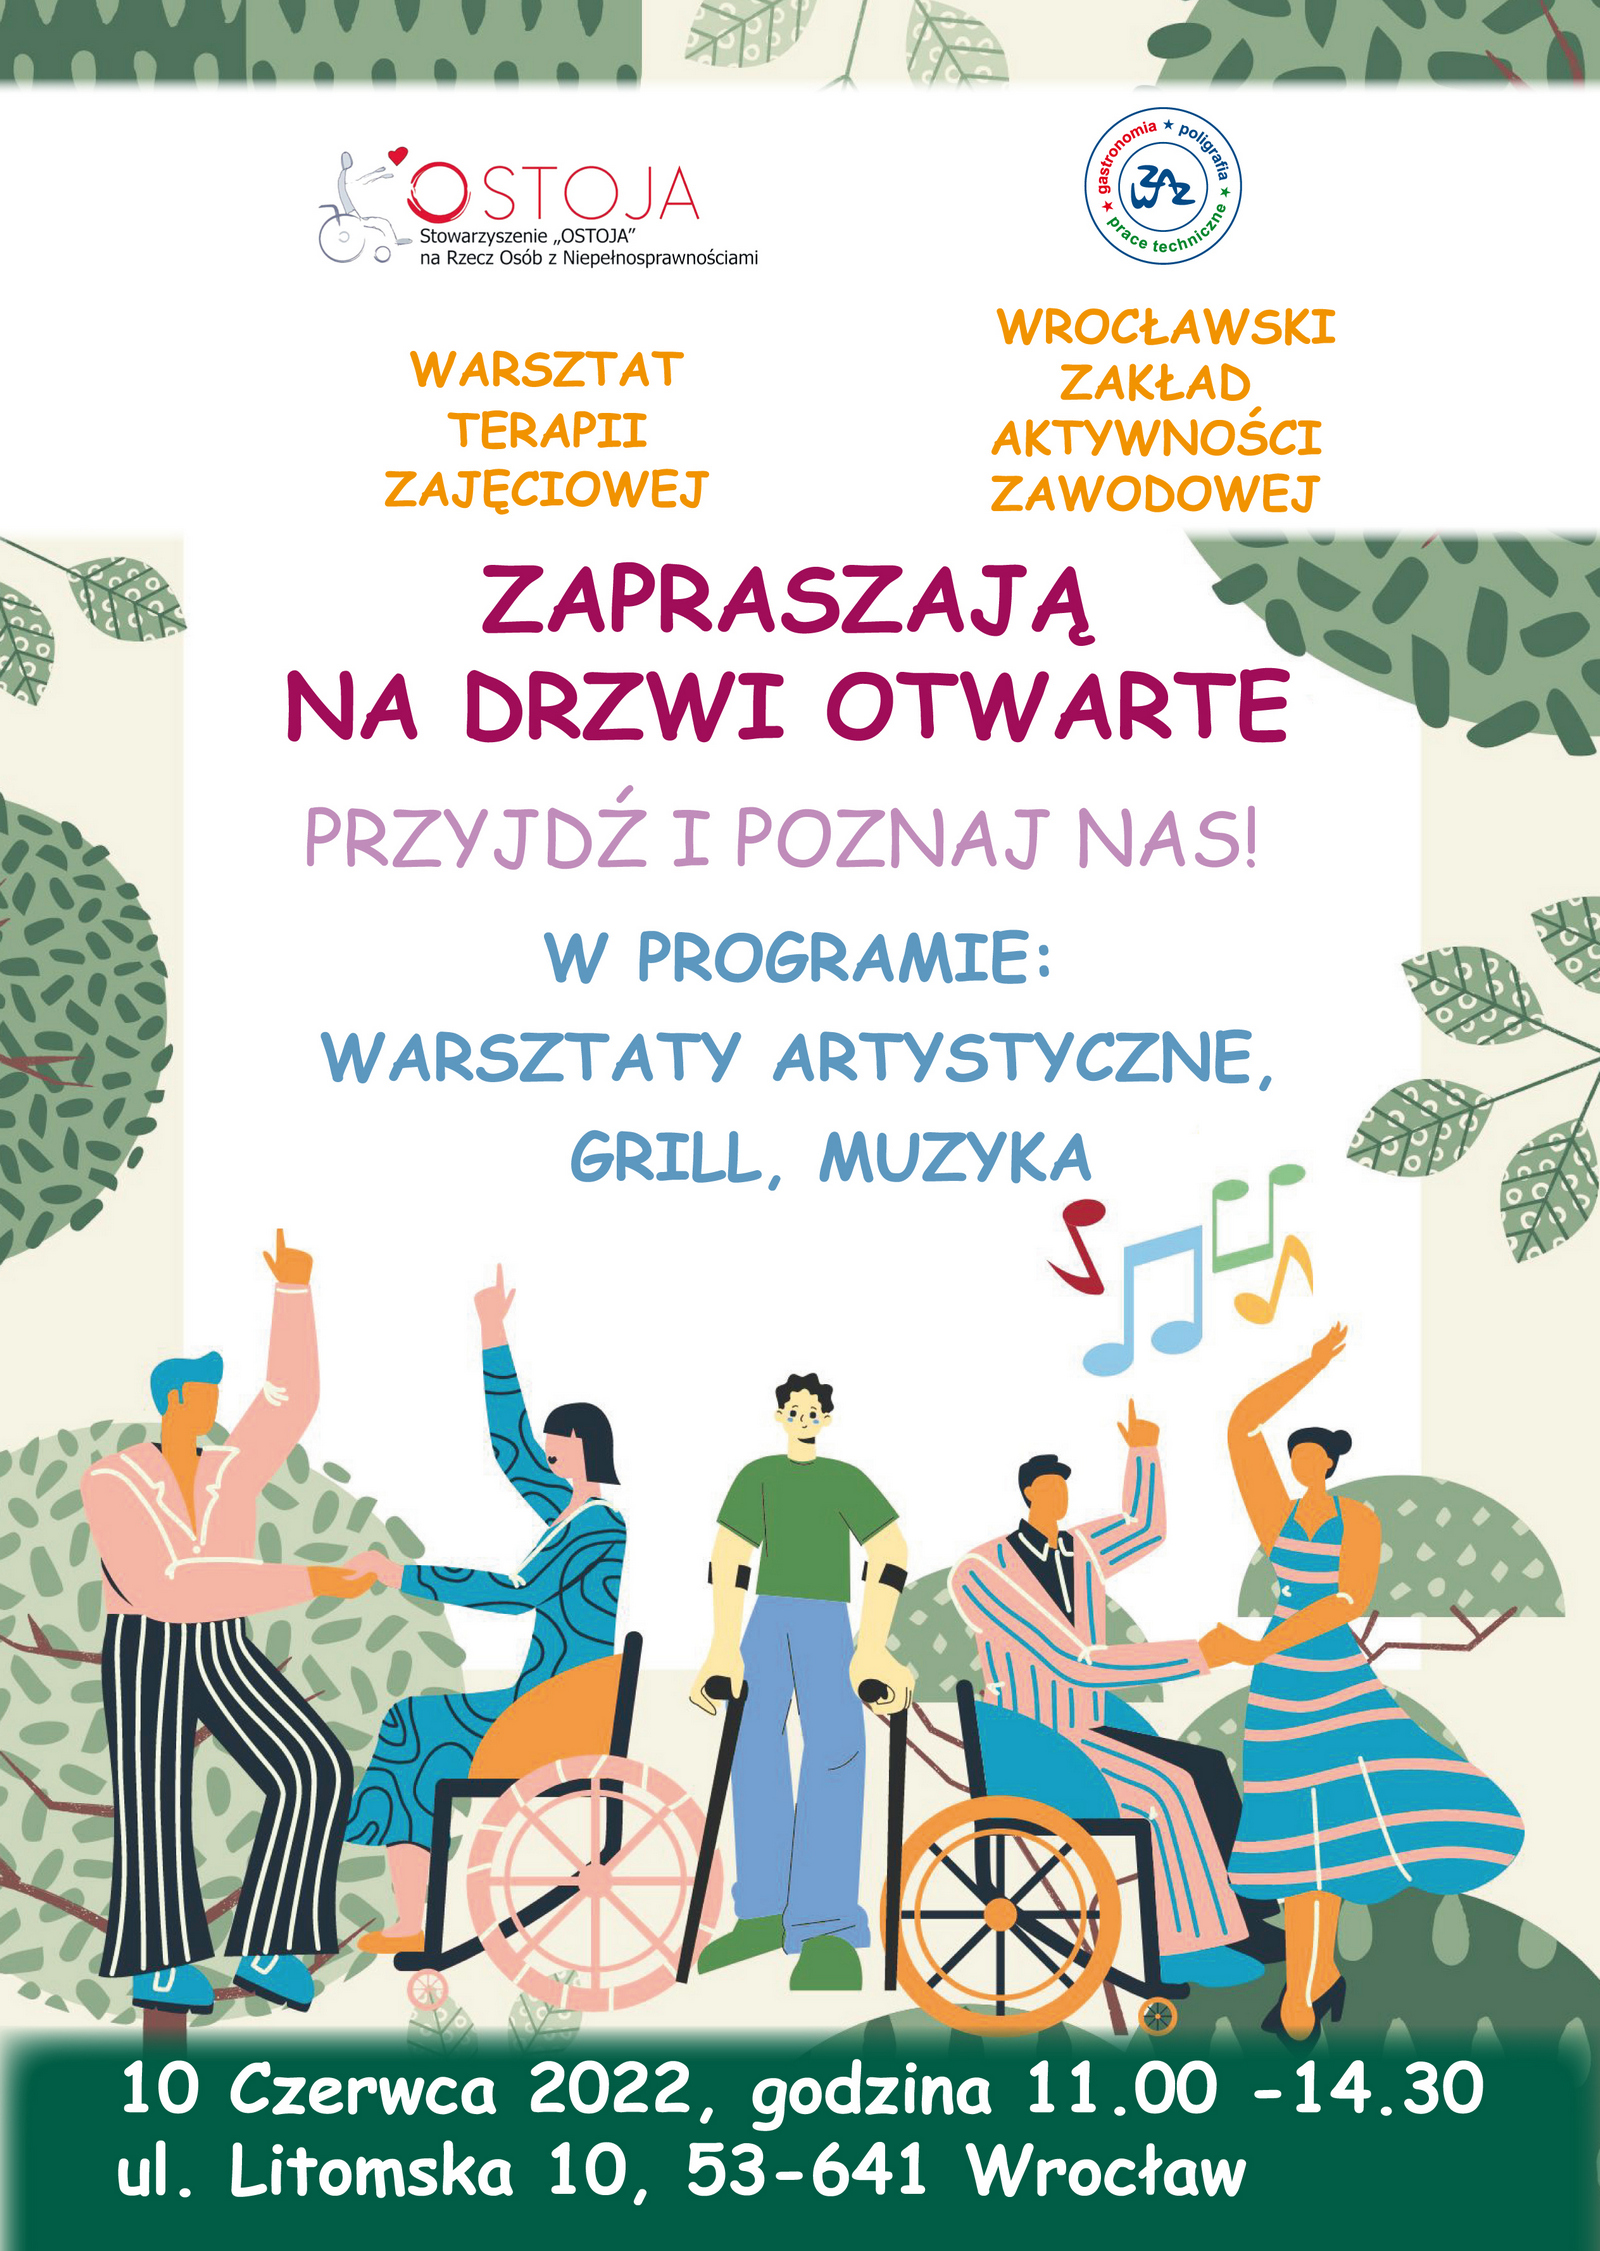 dzień otwarty WTZ Ostoja Wrocław